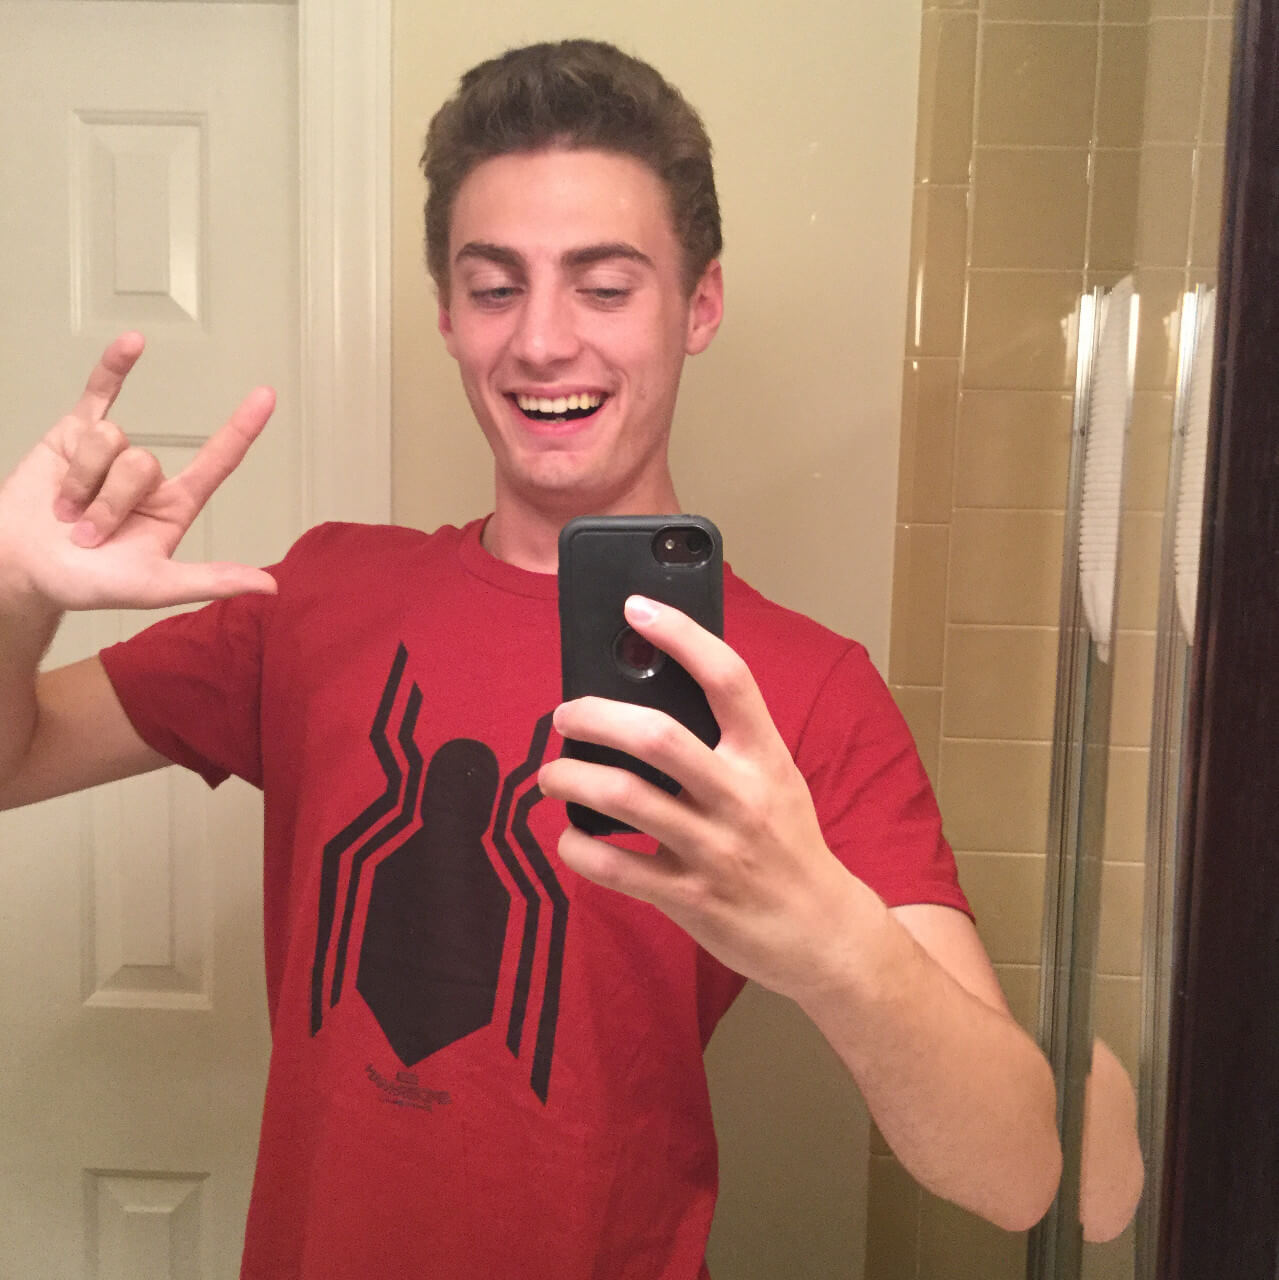 Bean wearing a Spiderman shirt